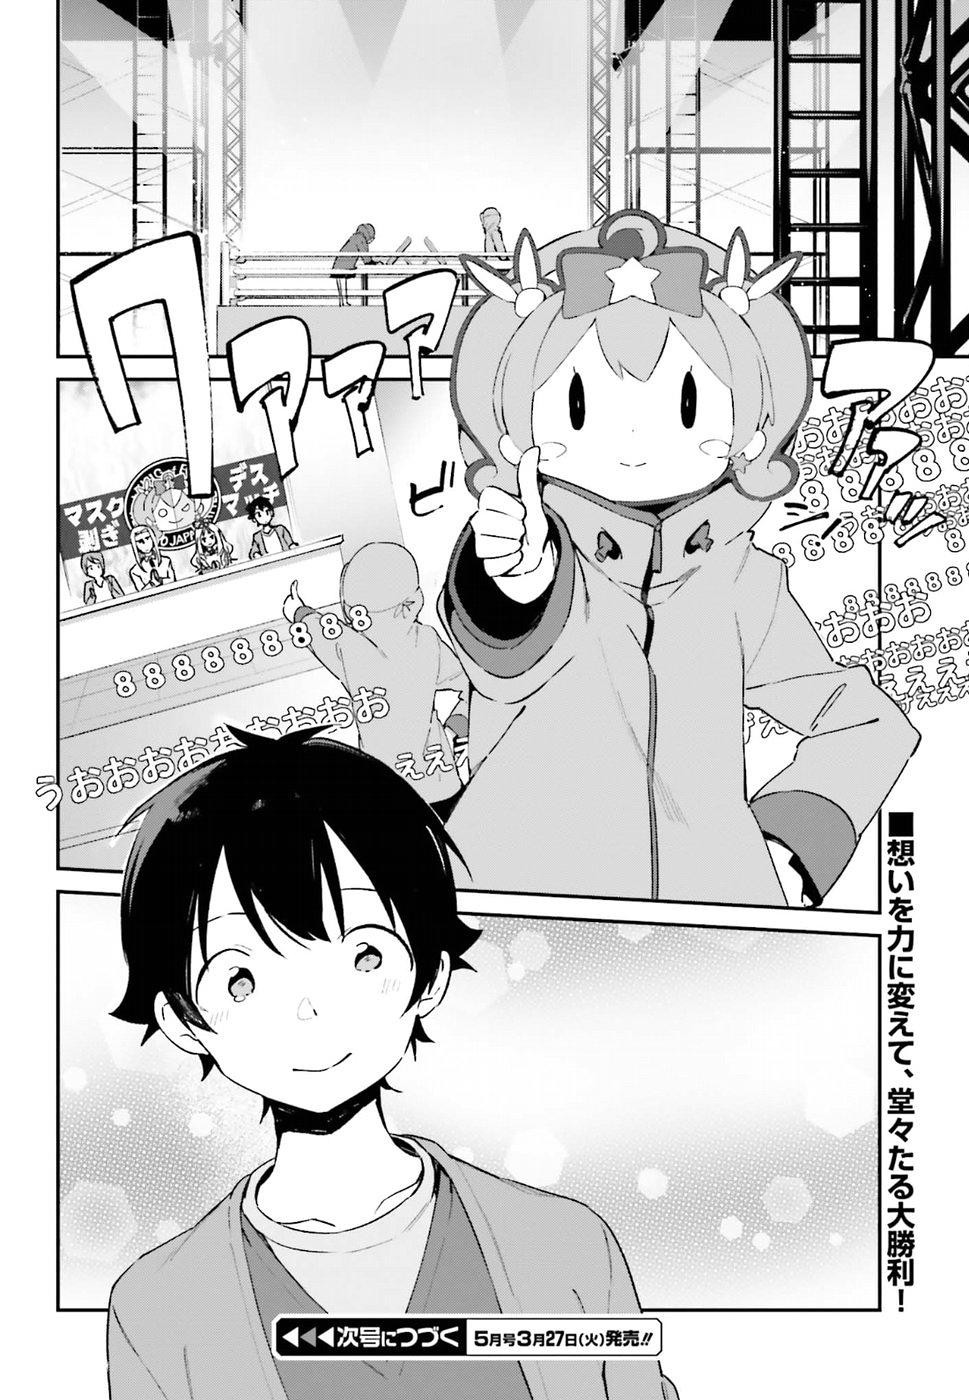 Ero Manga Sensei - Chapter 45 - Page 24